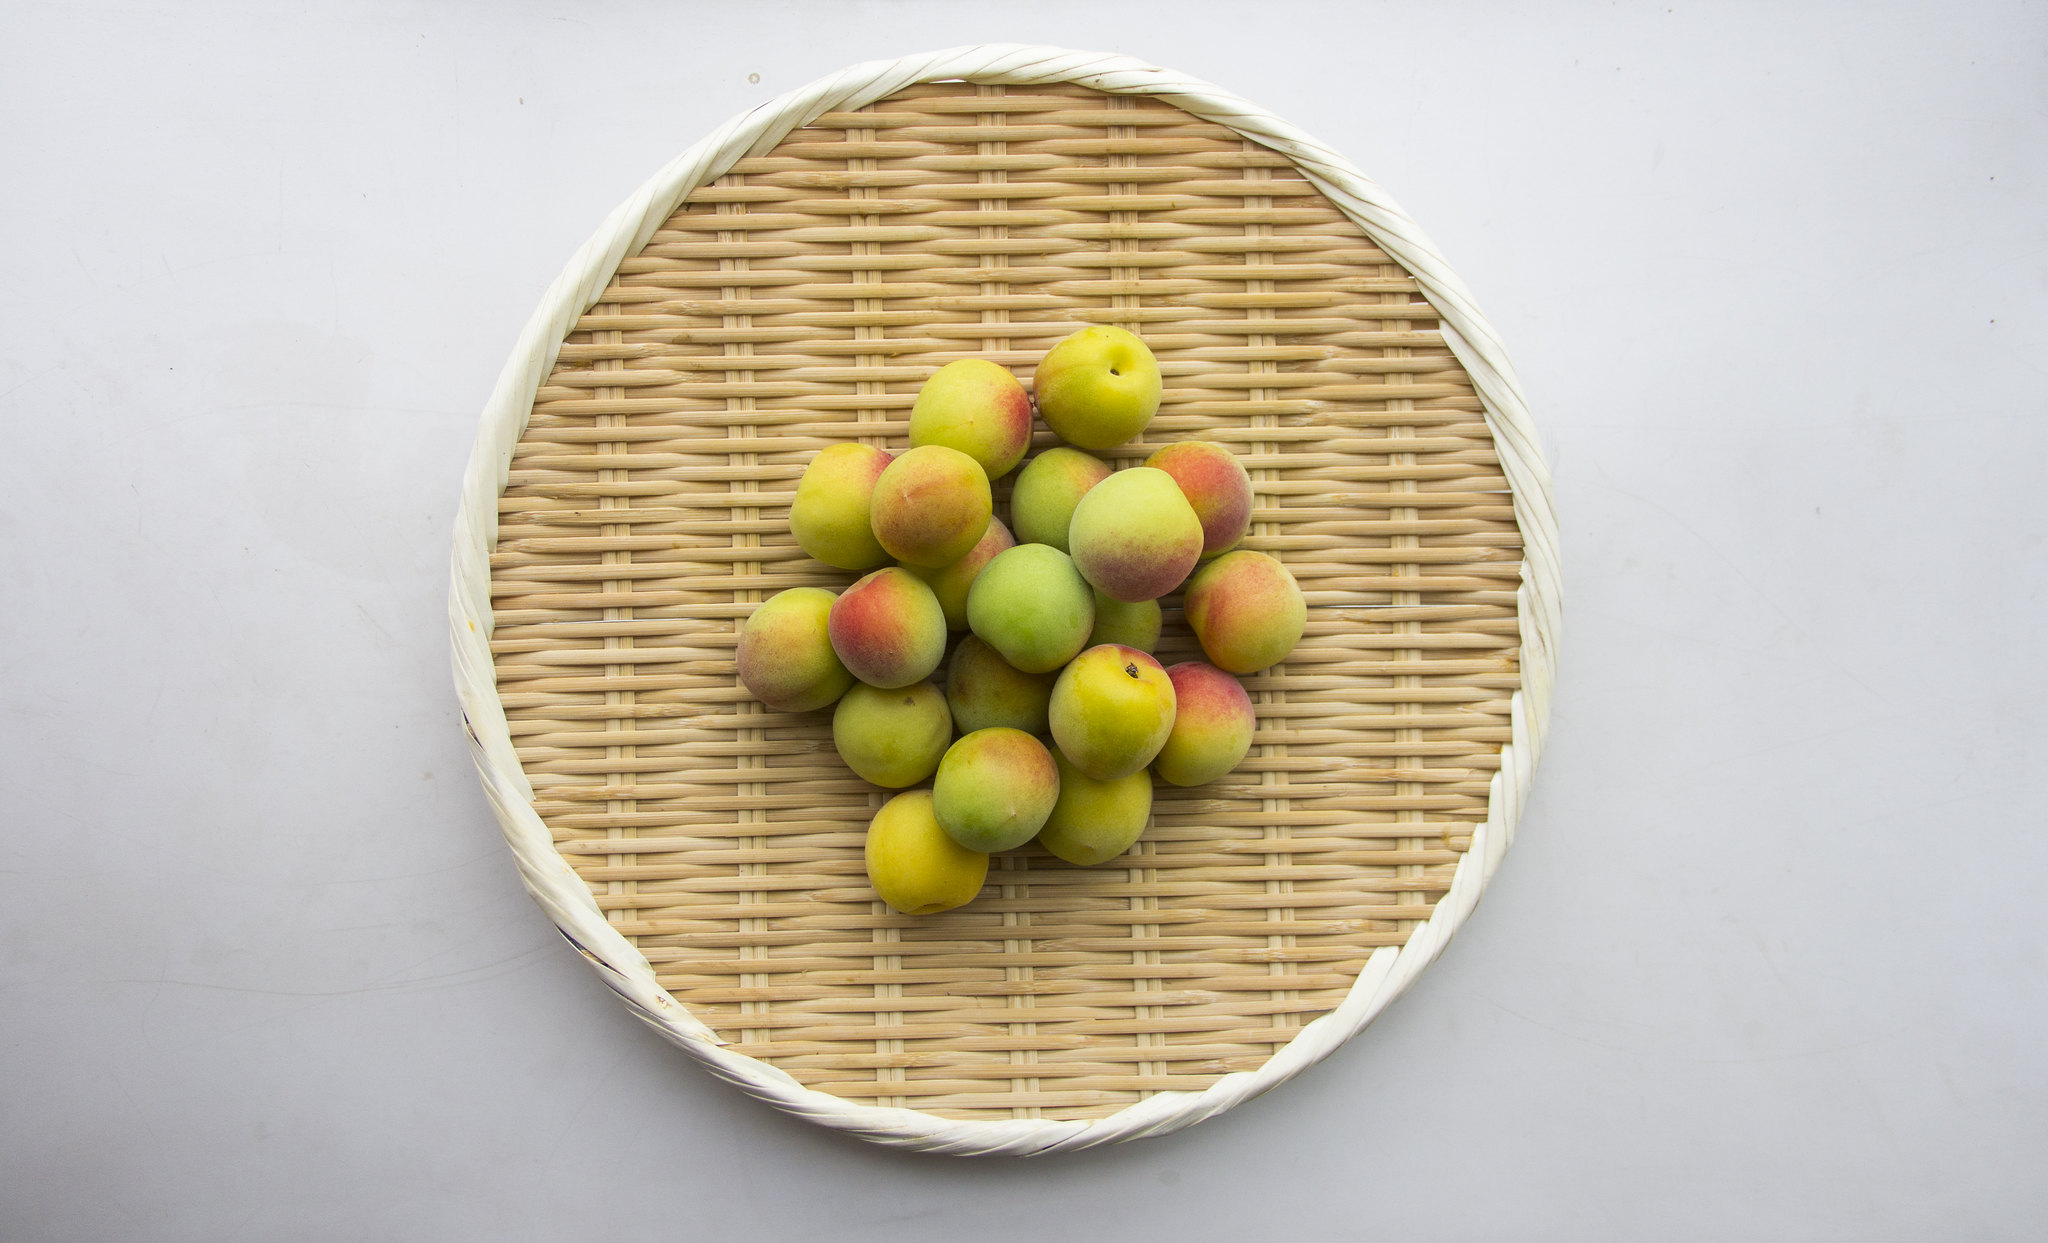 Unripe Japanese plums